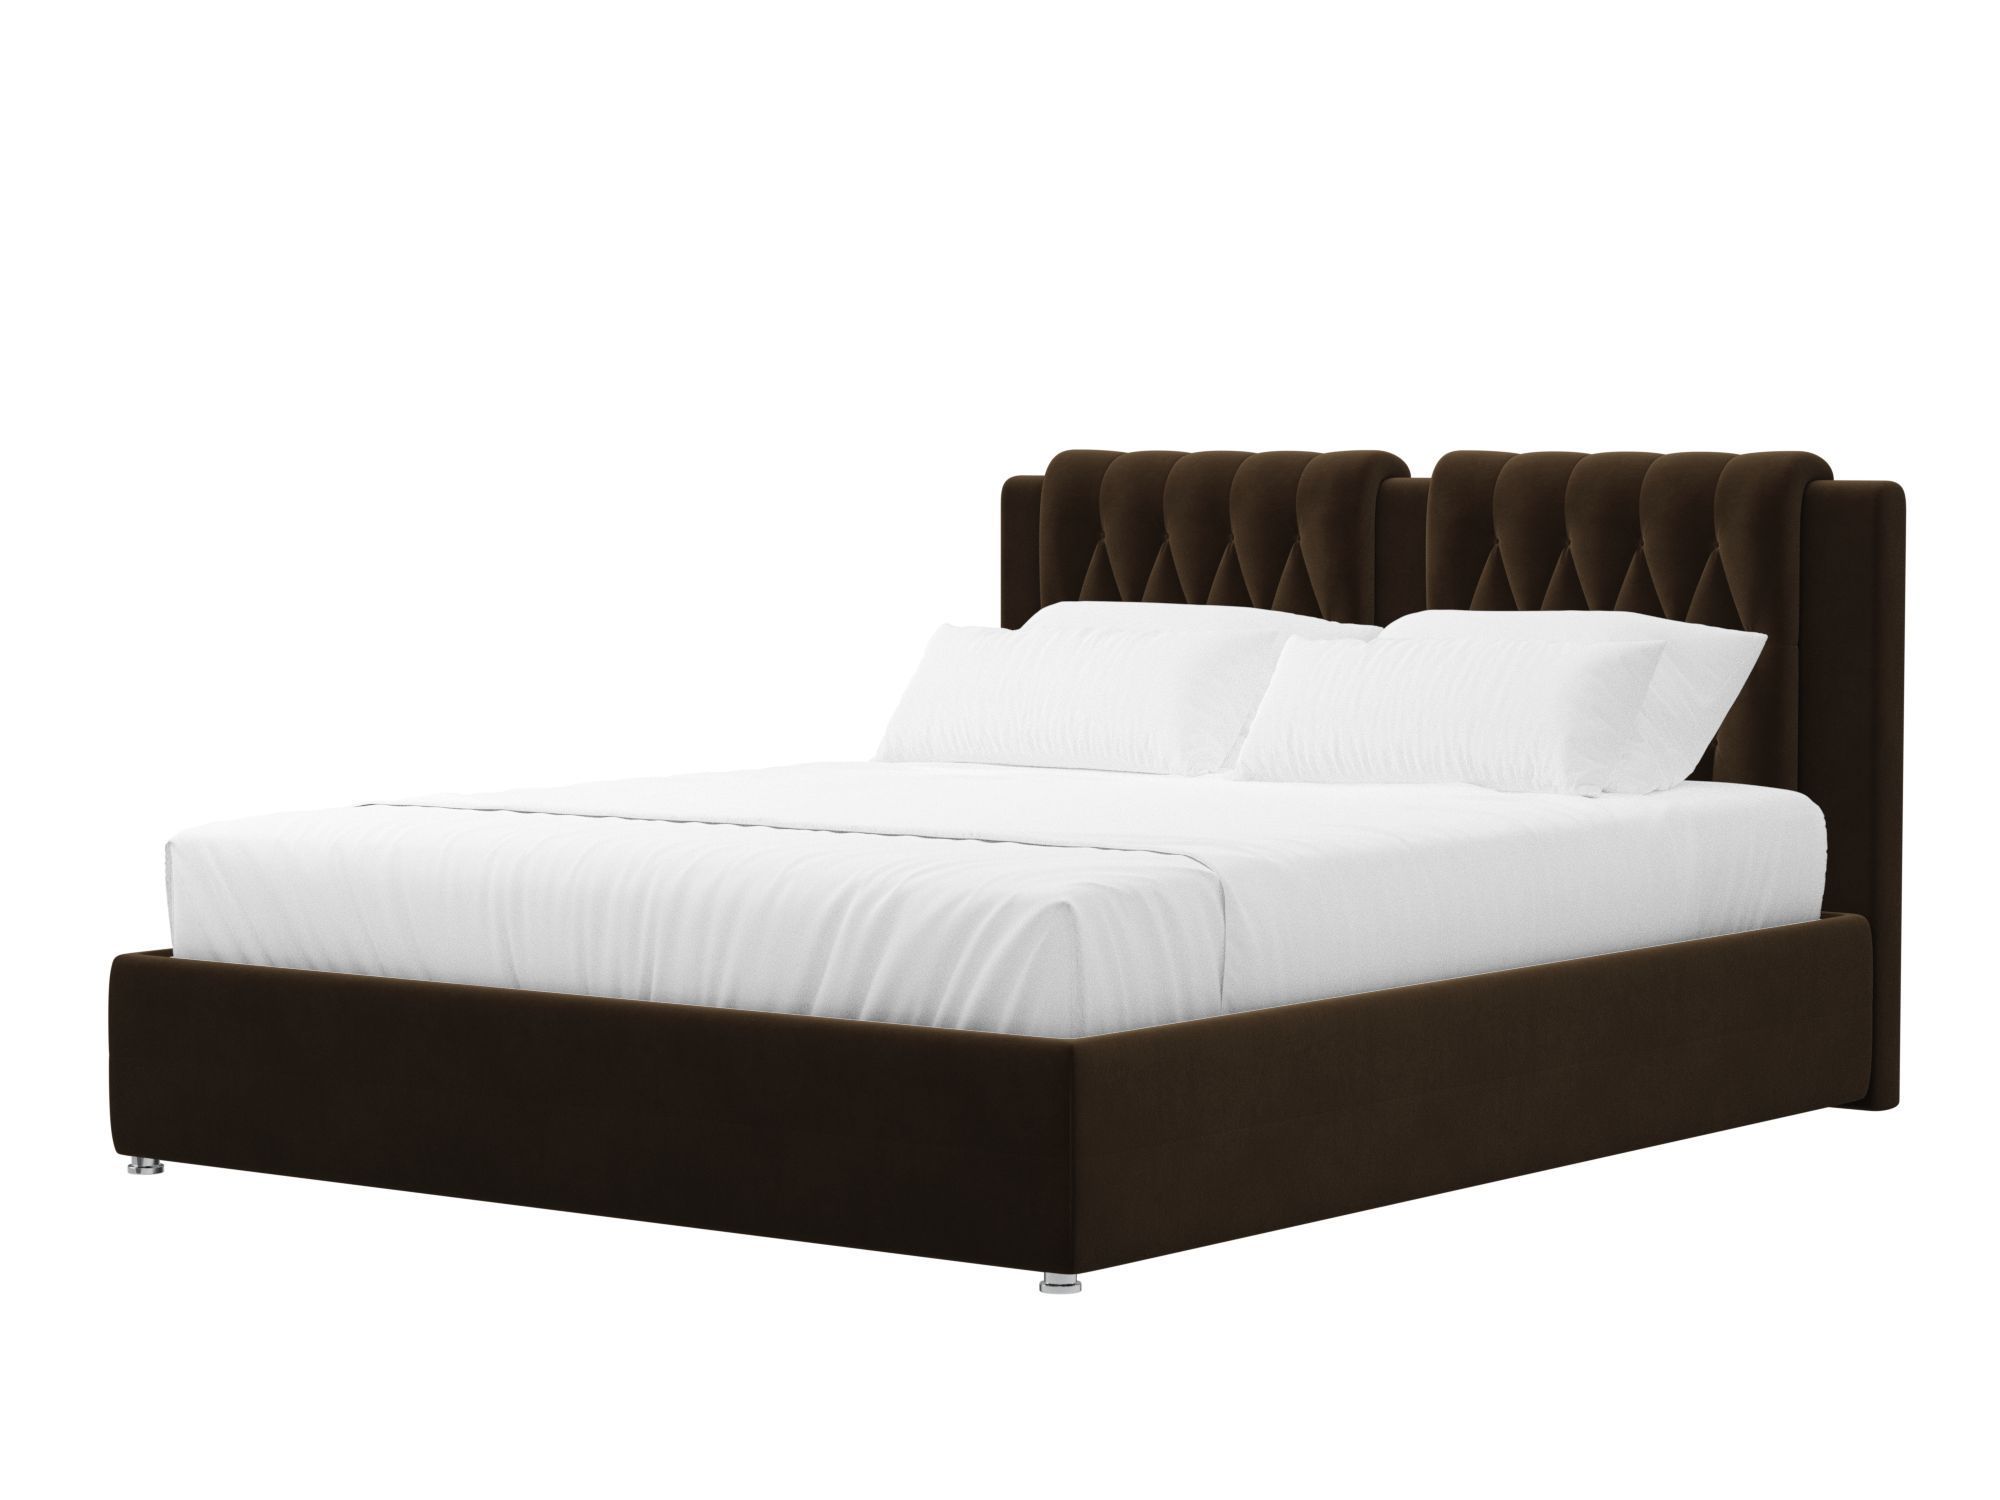 Кровать интерьерная Камилла 200 (коричневый)